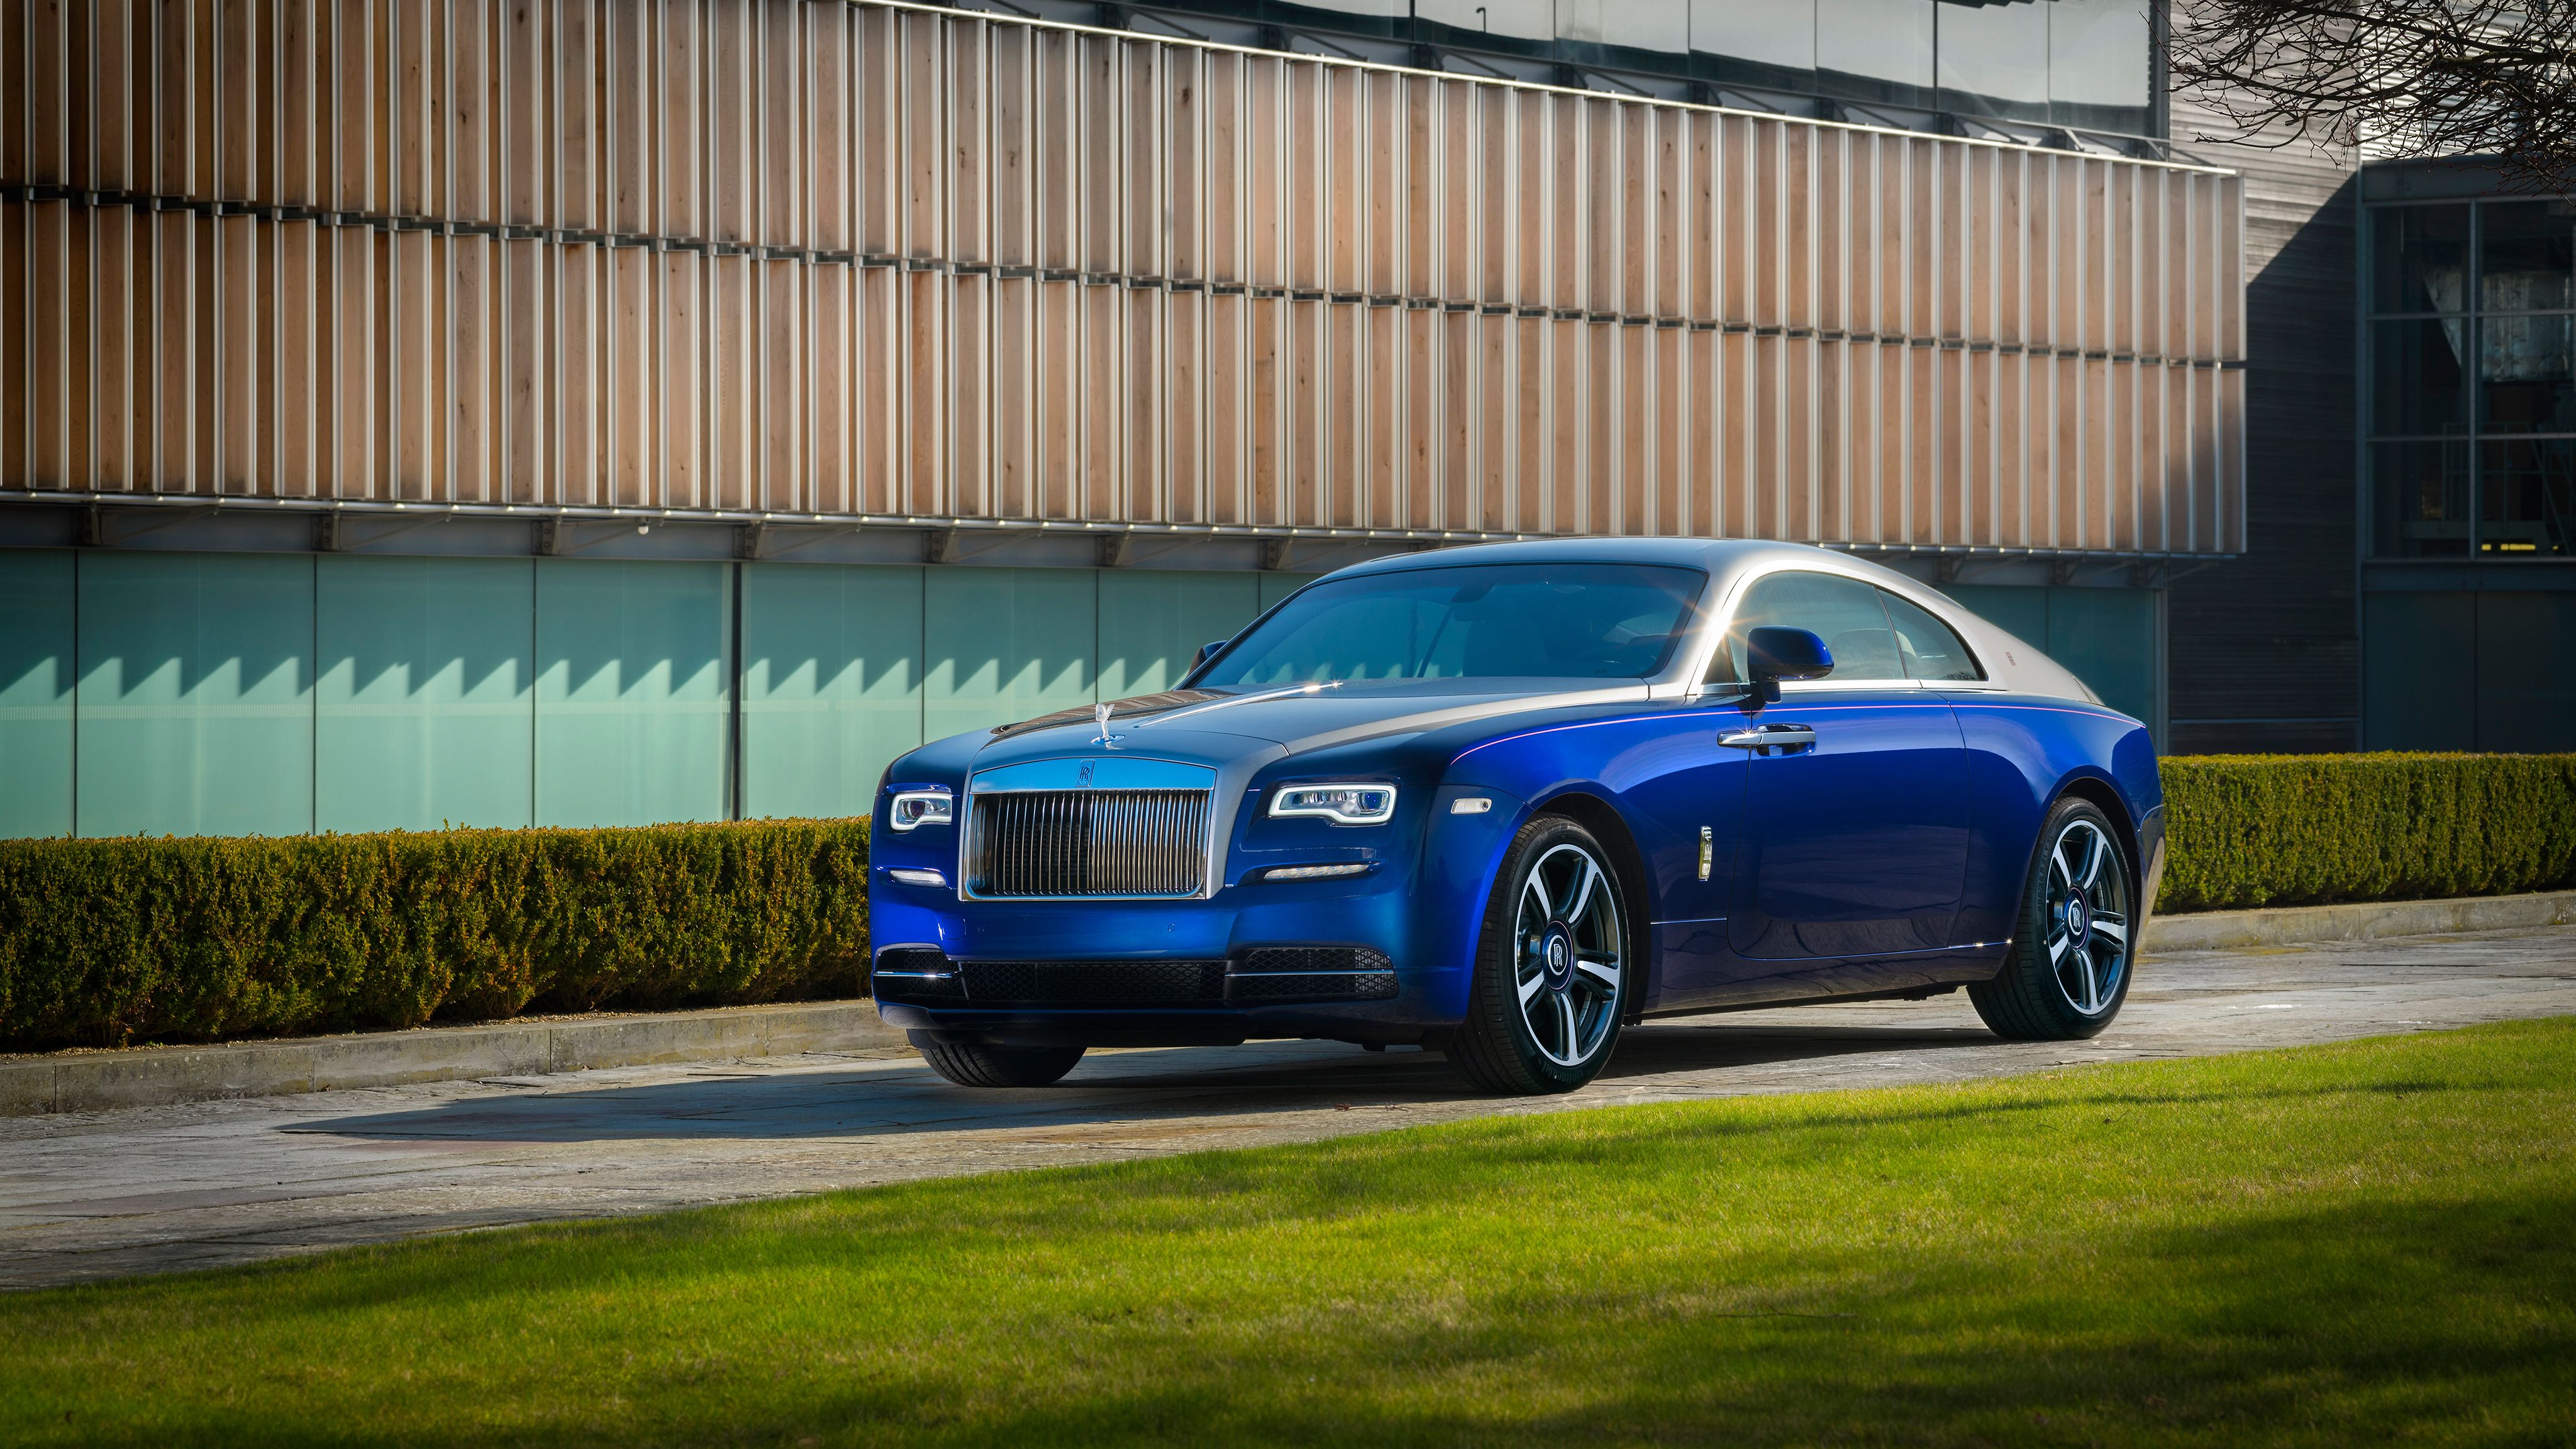 Rolls Royce Wraith 2017 Bespoke 4K Wallpaper. HD Car